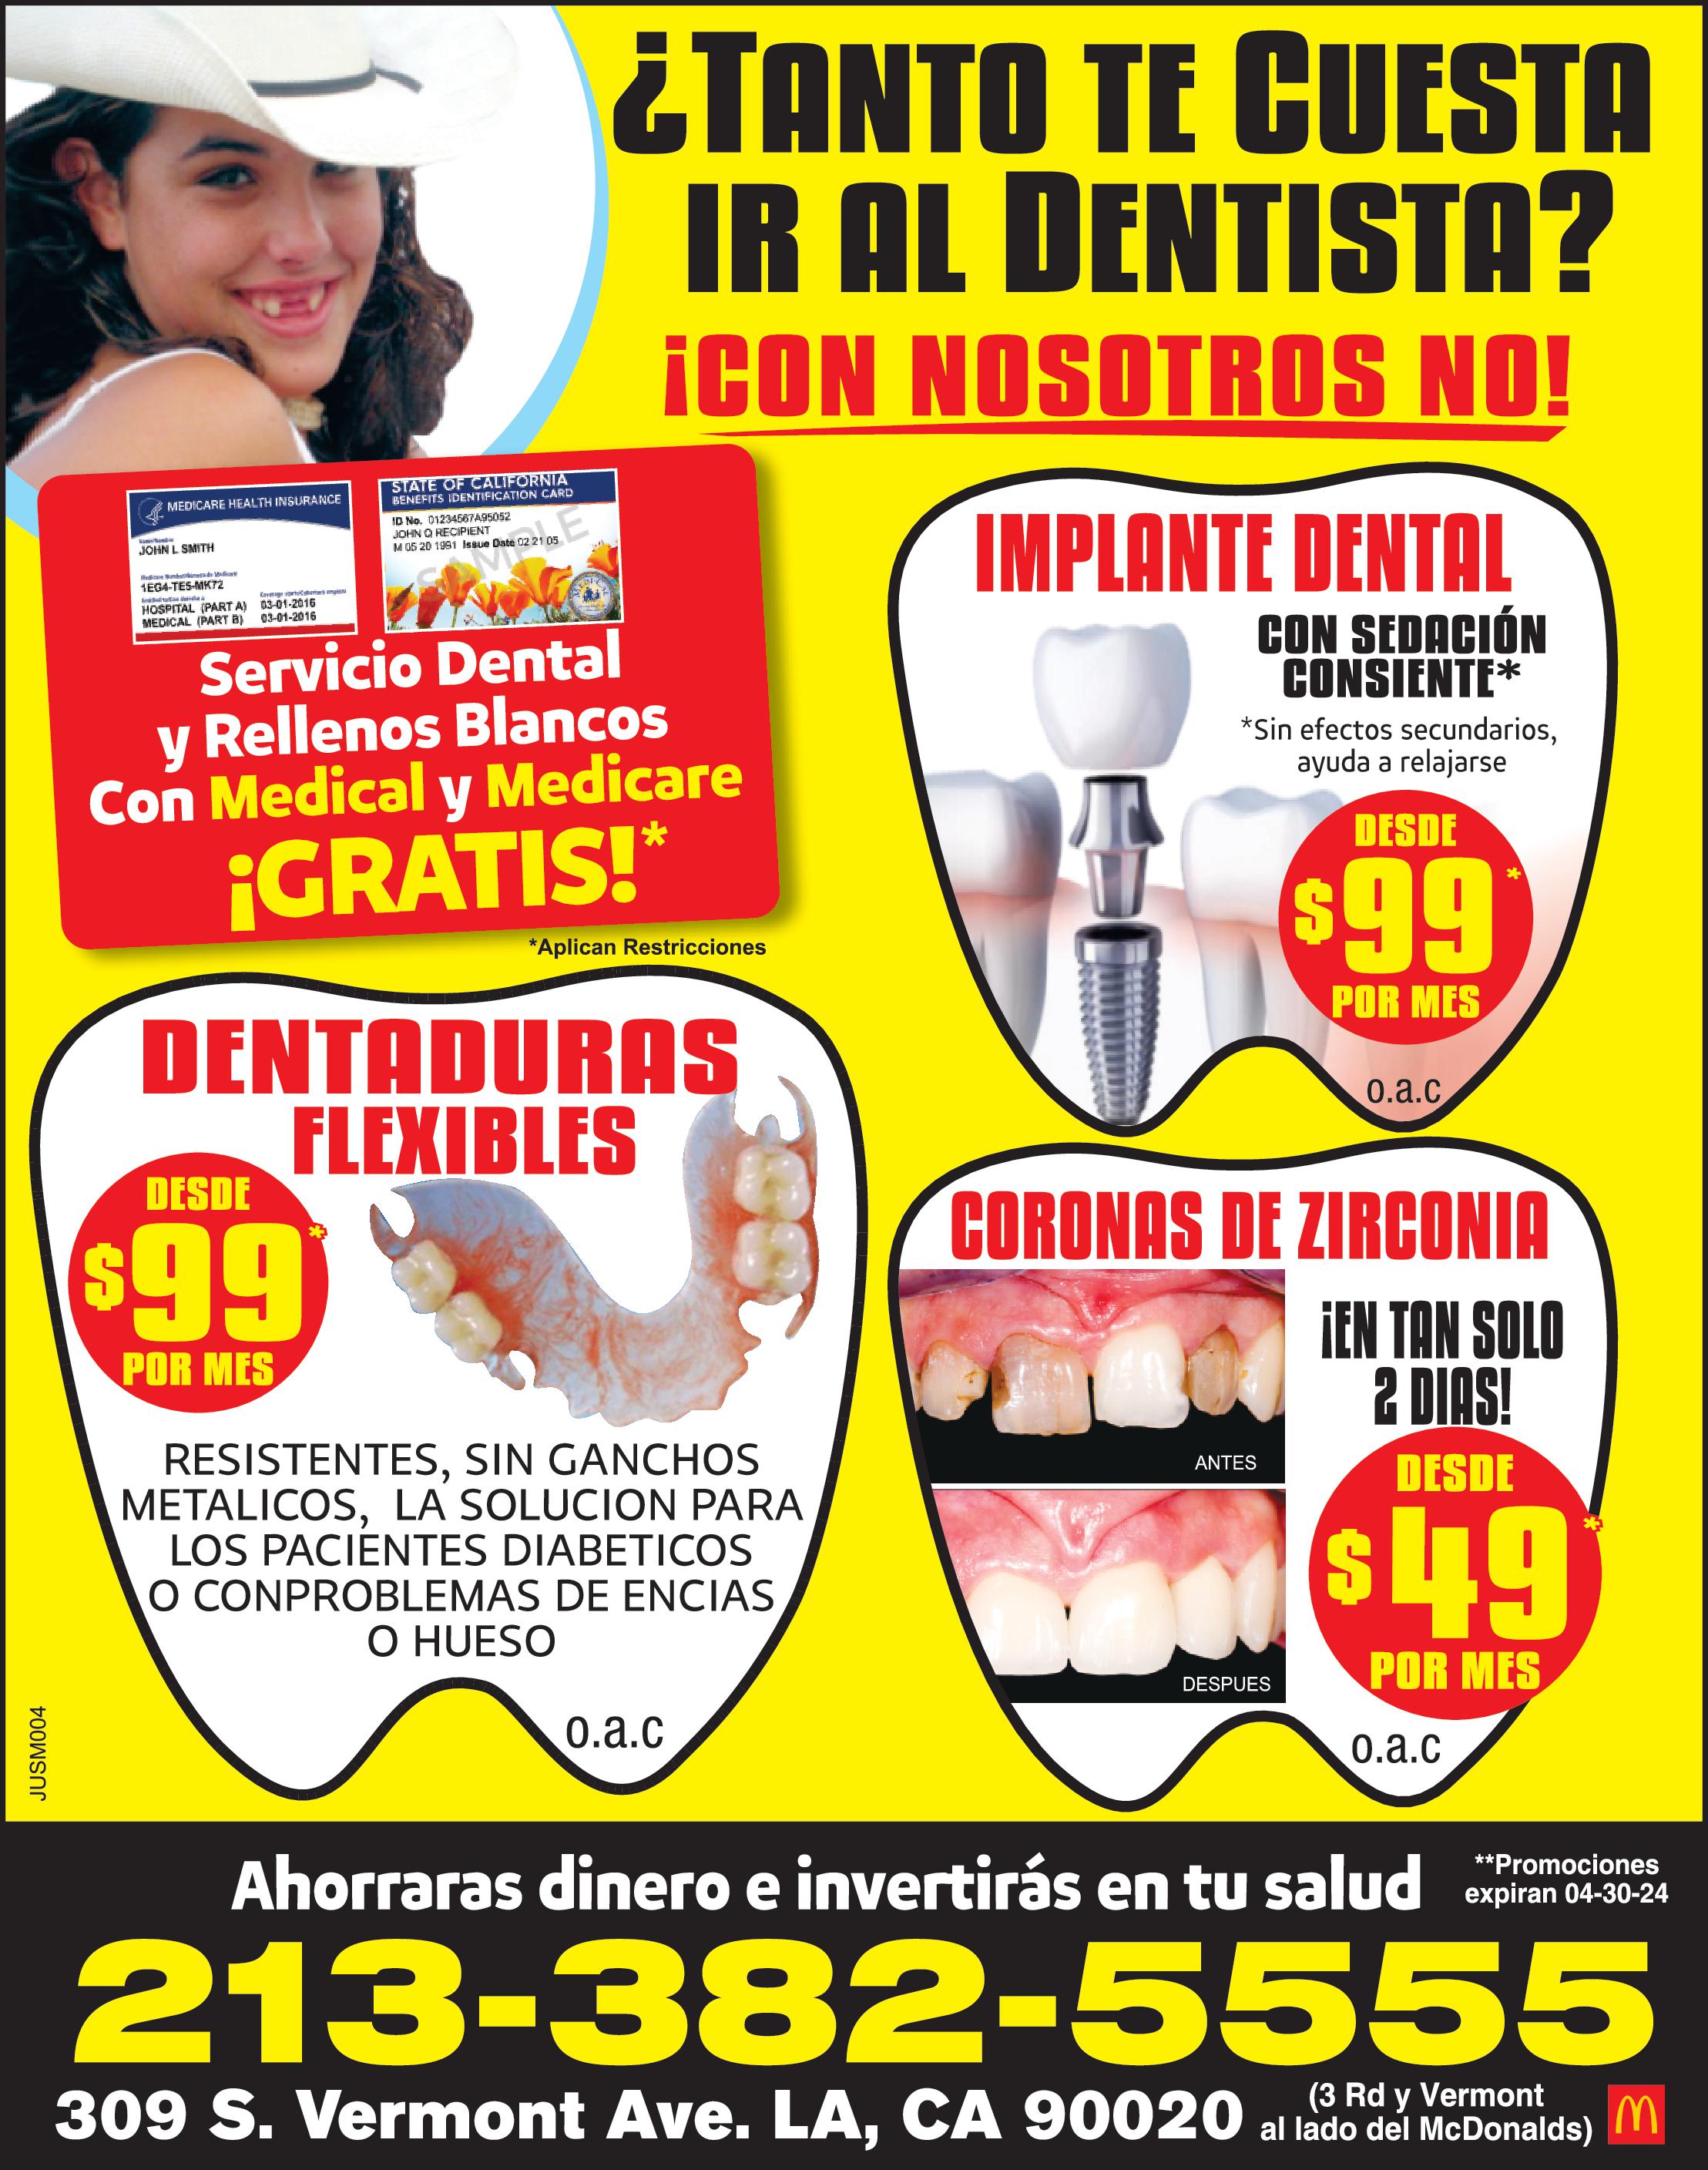 MEDICARE HEALTH INSURANCE JOHN SMITH 1EG4 TE5 MK72 HOSPITAL PART 03-01-2018 MEDICAL PART 03-01-2016 STATE OF CALIFORNIA BENEFITS IDENTIFICATION CARD 1D No. 01234567A95052 JOHN RECIPIENT MC6 20 1991 Issue Date 02 21 05 Servicio Dental Rellenos Blancos Con Medical Medicare Aplican Restricciones GRATIS DESDE 99 POR MES DENTADURAS FLEXIBLES Aplican Restricciones RESISTENTES SIN GANCHOS METALICOS LA SOLUCION PARA LOS PACIENTES DIABETICOS CON PROBLEMAS DE ENCIAS HUESO TANTO TE CUESTA IR AL DENTISTA CON NOSOTROS NO Ahorraras dinero invertirás en tu salud Expira 01-30-24 CORONAS DEZIRCONIA EN TAN SOLO DIAS EN ANTES DESPUES DESDE 669 Restricciones Aplican Expira 01-30-24 IMPLANTE DENTAL CON SEDACIÓN CONSIENTE DESDE 110 POR MES Sin efectos secundarios ayuda relajarse Aplican Restricciones Expira 01-30-24 LA CLINICA DENTAL DEL AHORRO 213-382-5555 309 S. Vermont Ave. LA CA 90020 al lado del McDonalds Rd IM